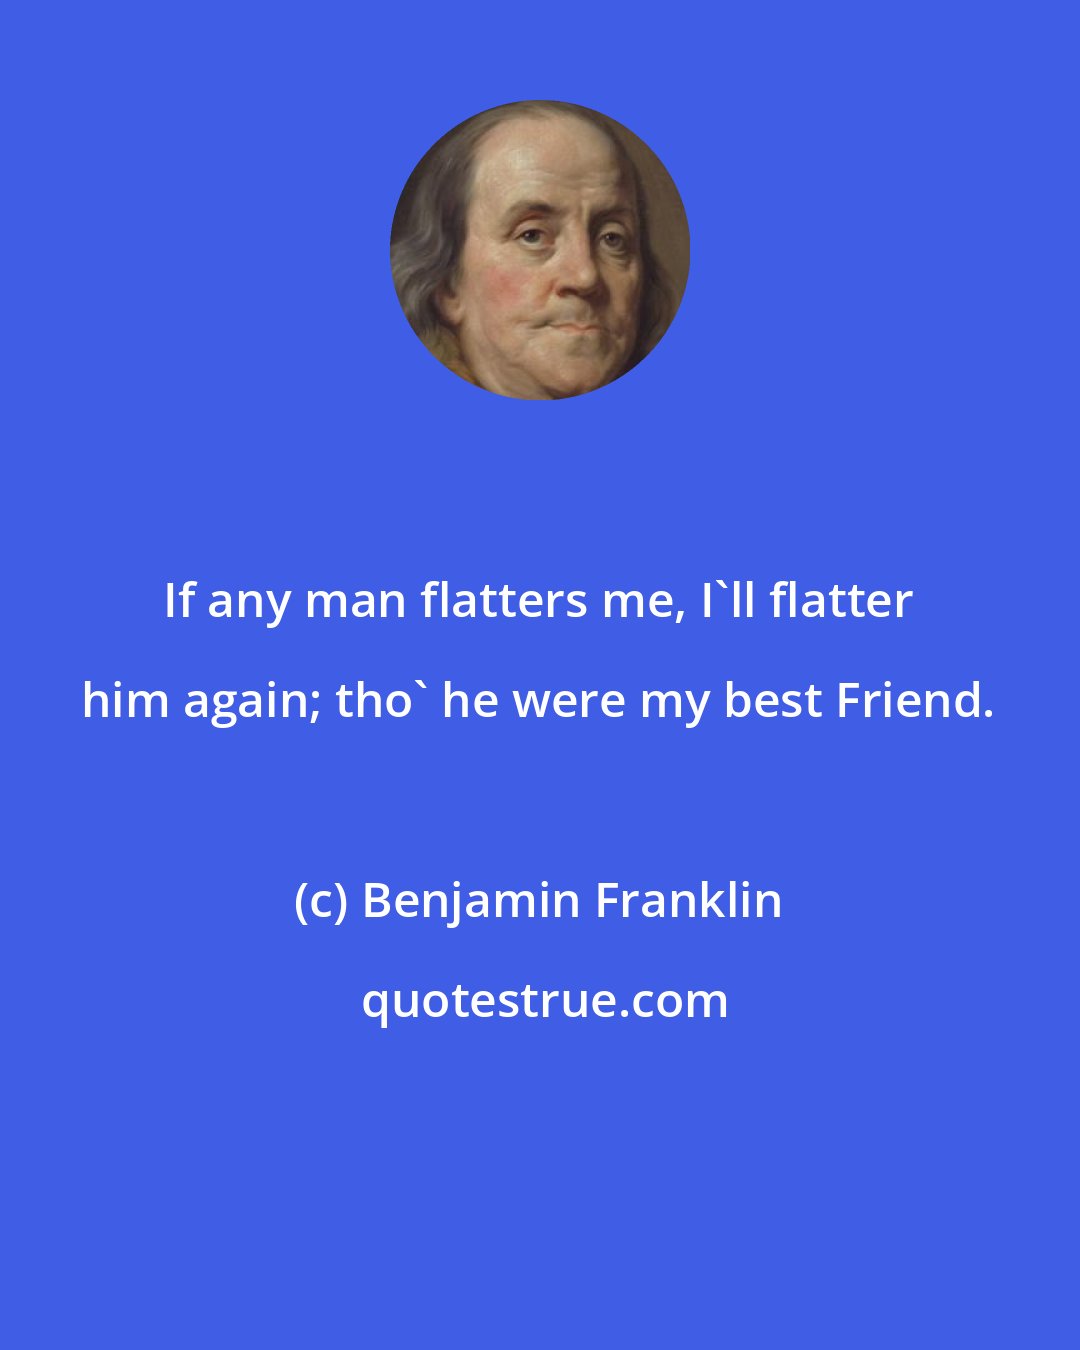 Benjamin Franklin: If any man flatters me, I'll flatter him again; tho' he were my best Friend.